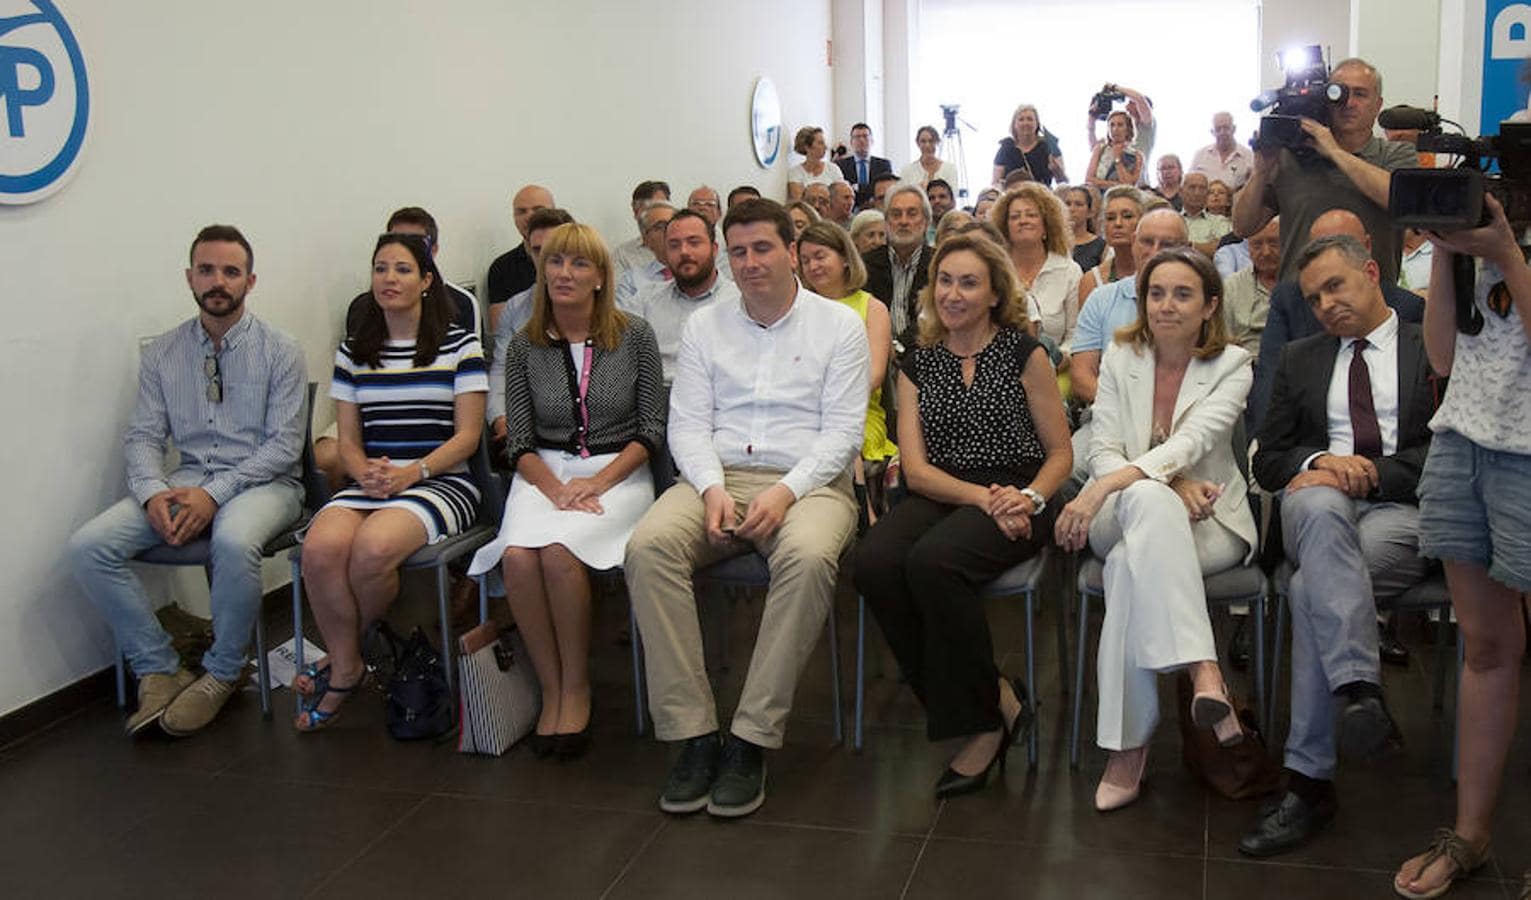 Pablo Casado ha participado en un acto con militantes del PP riojano en el que ha estado acompañado el presidente del partido en La Rioja. El candidato a suceder a Rajoy como cabeza visible del Partido Popular ha expuesto sus planes para el partido.